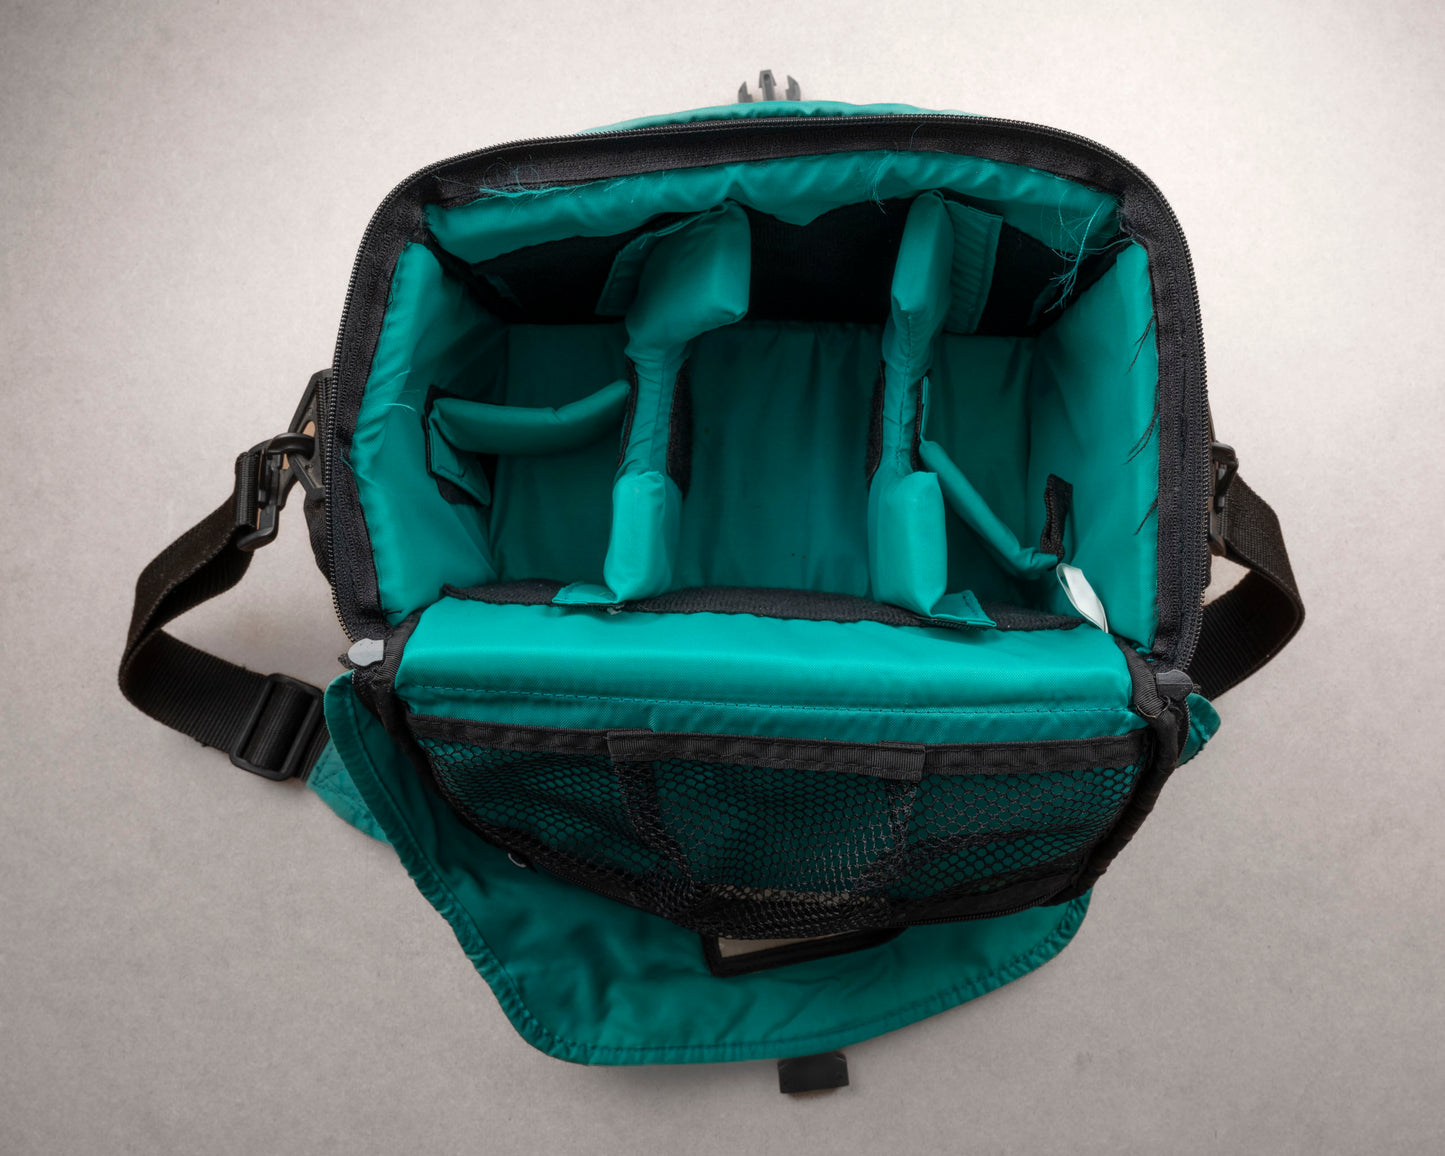 Grand sac d'équipement photo Optex noir et vert